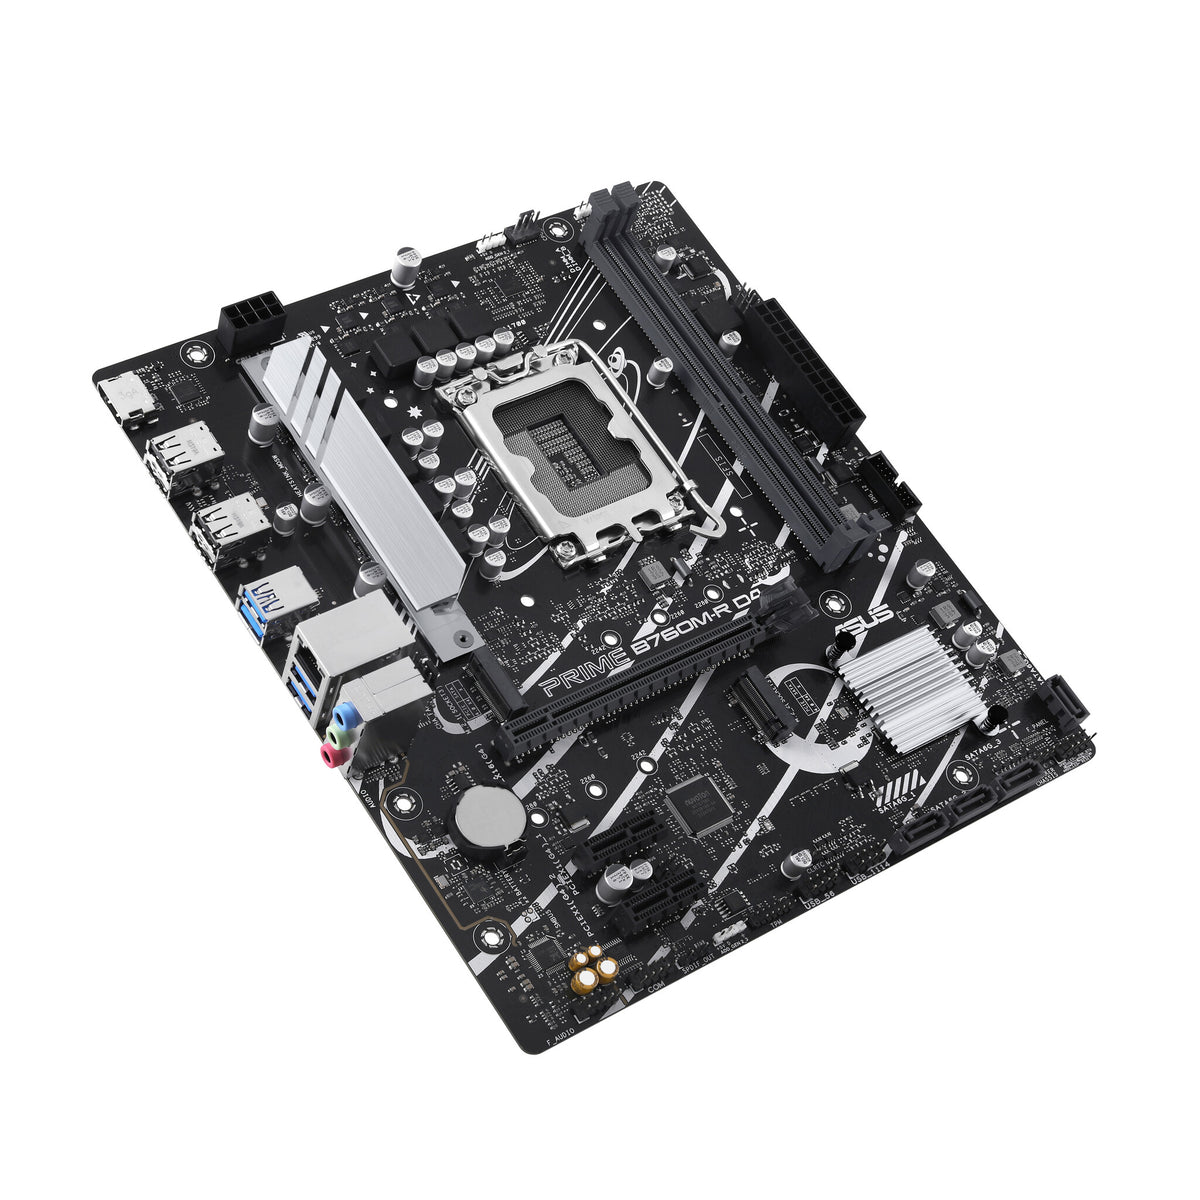 ASUS PRIME B760M-R D4 micro ATX motherboard - Intel B760 LGA 1700